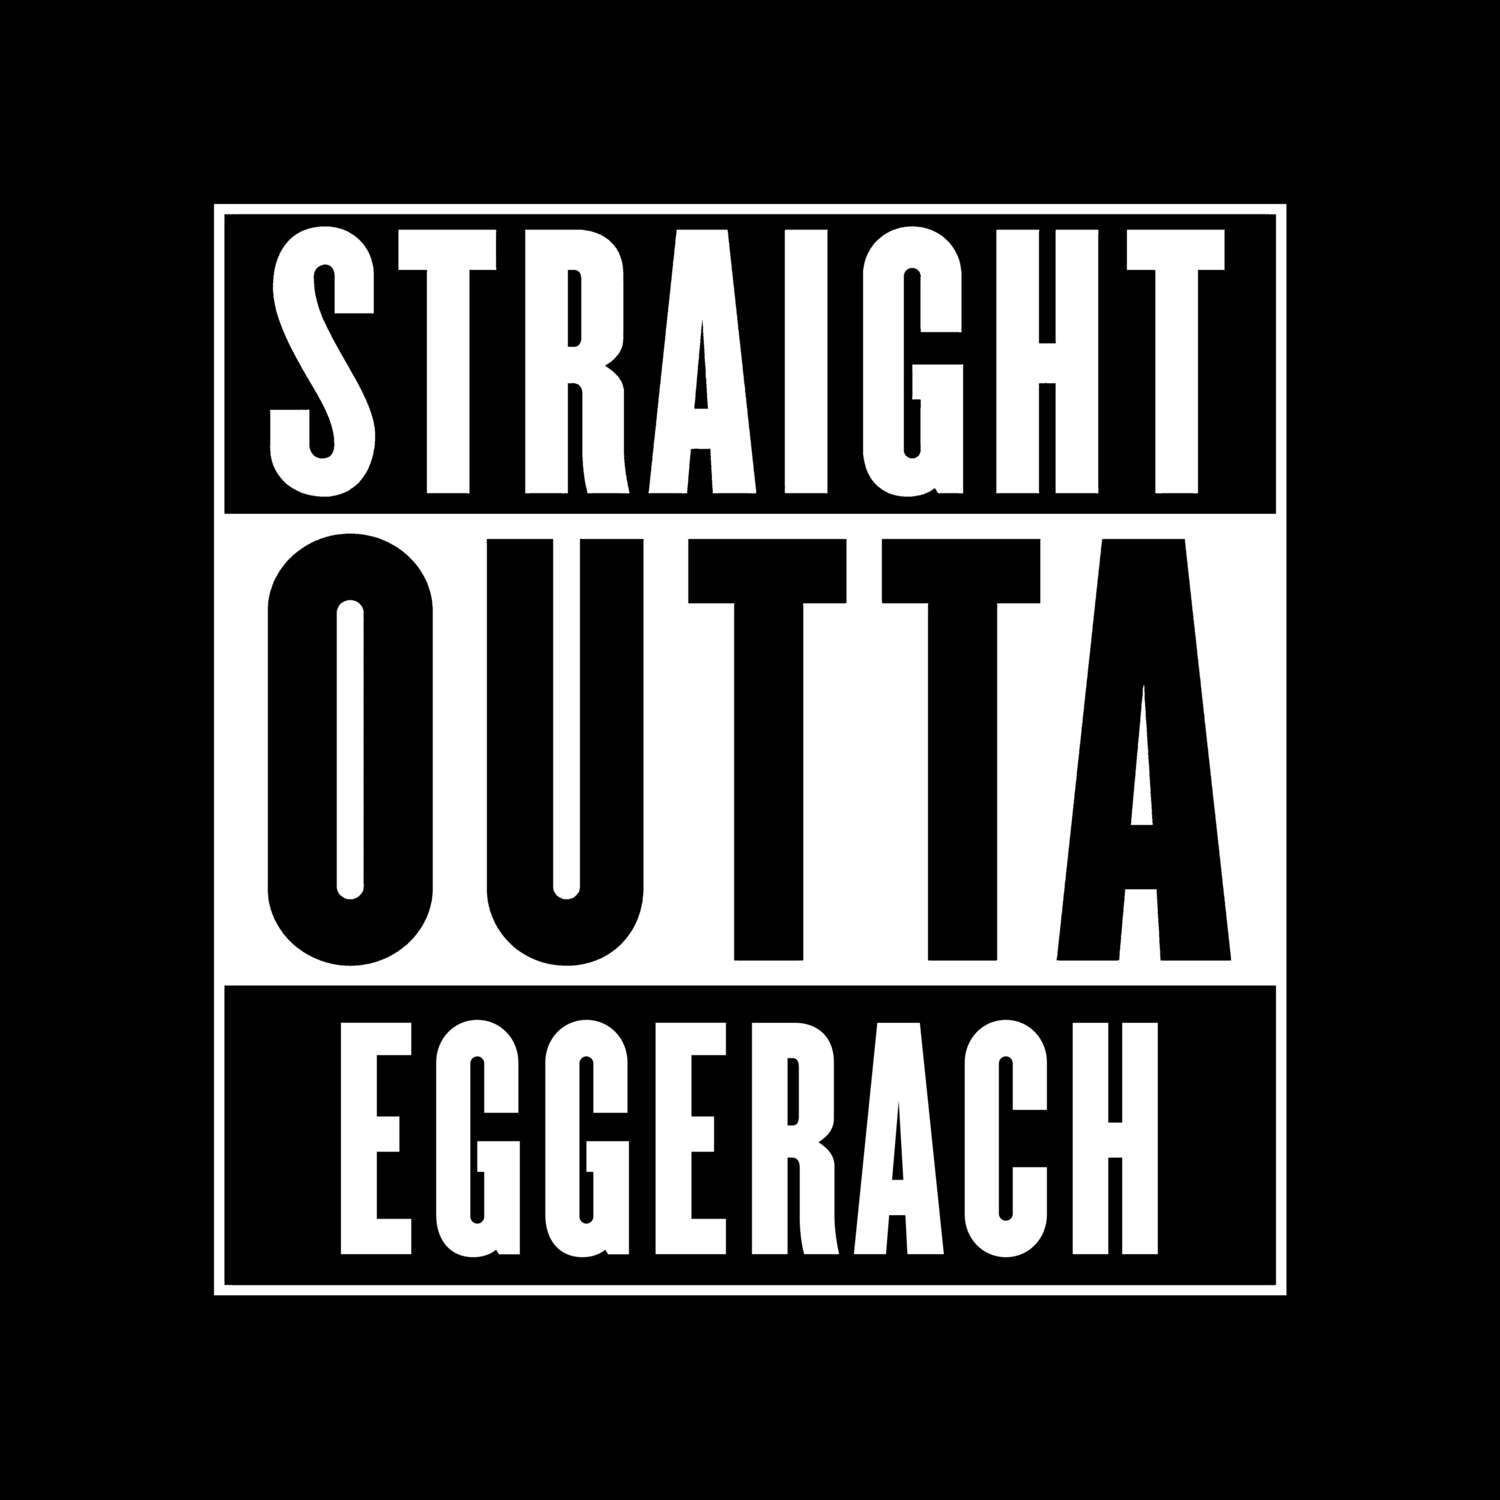 Eggerach T-Shirt »Straight Outta«